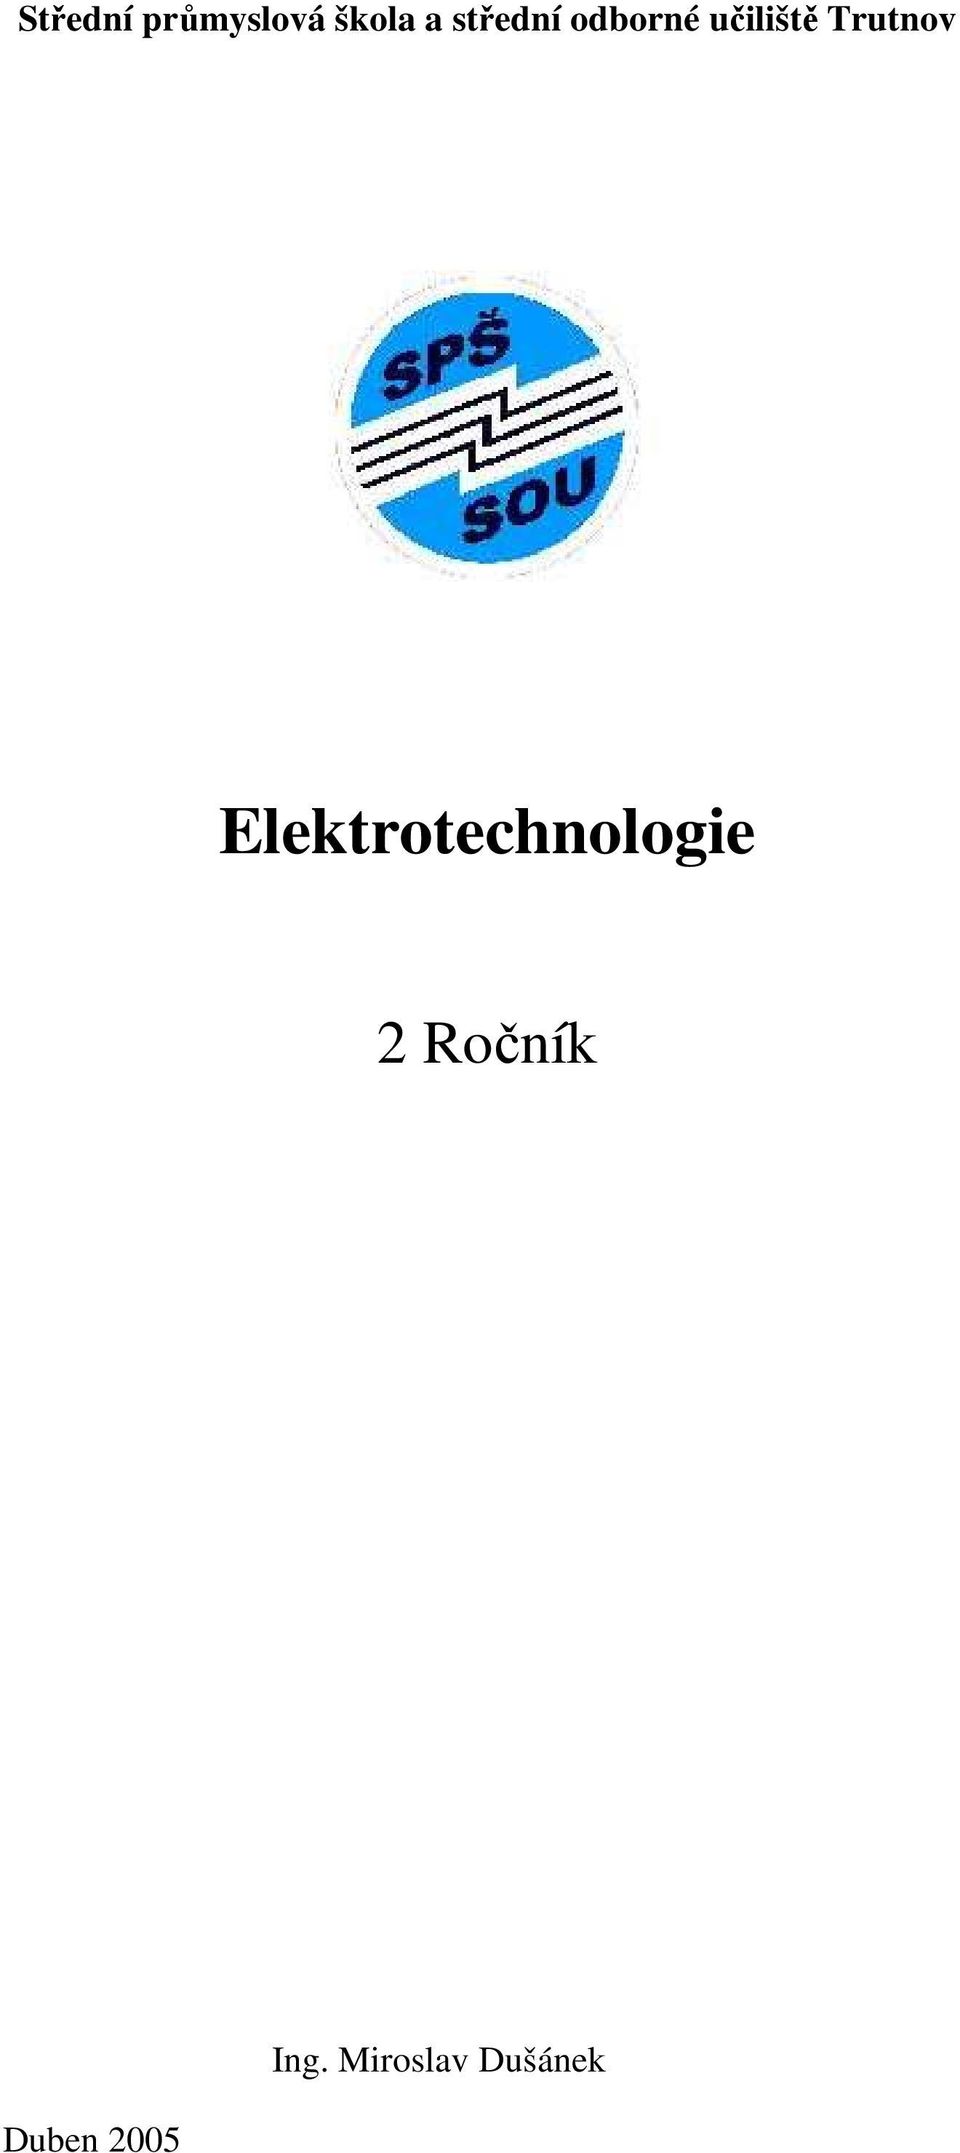 Trutnov Elektrotechnologie 2